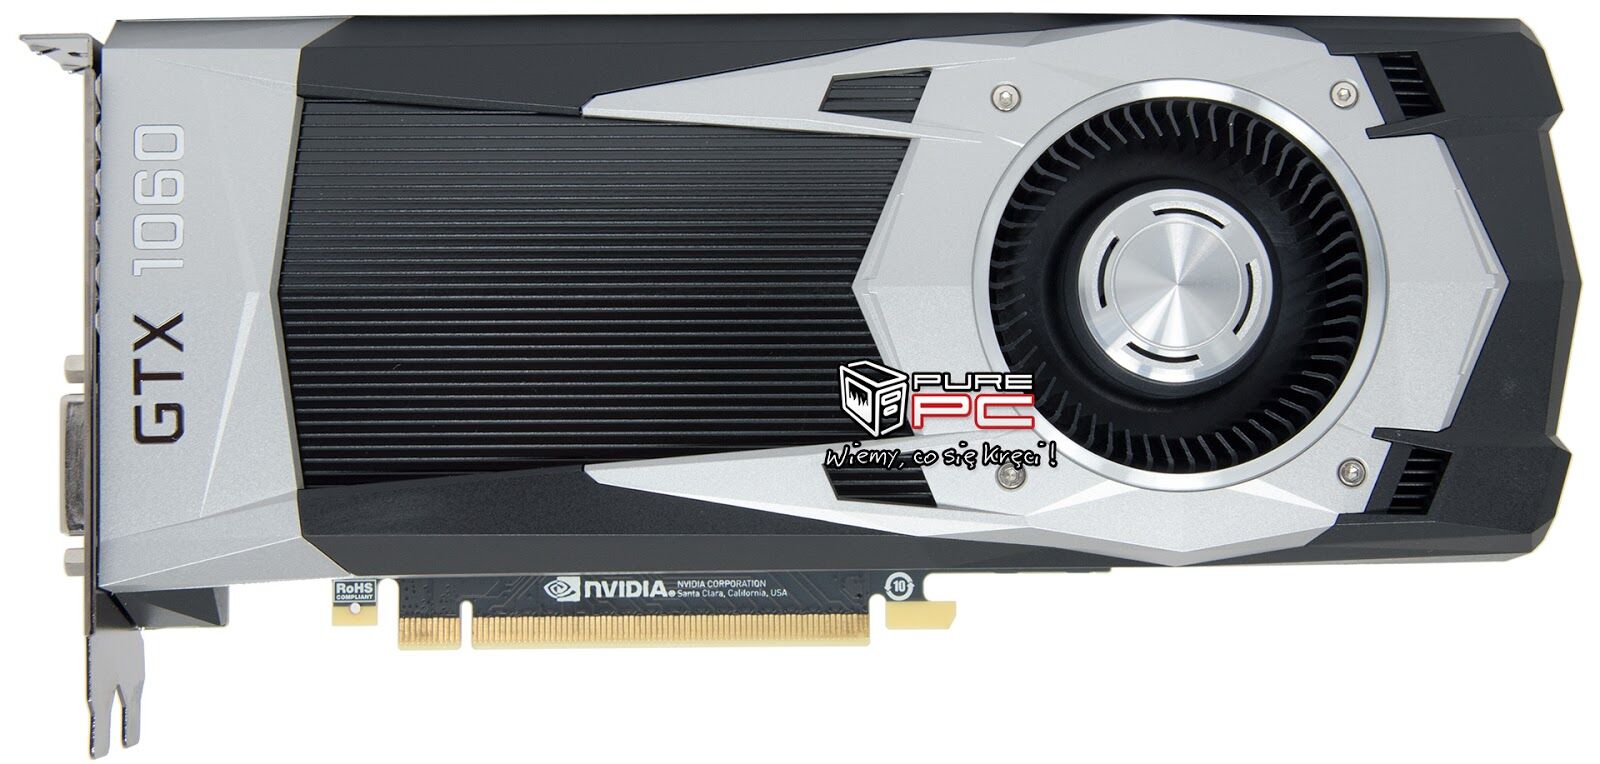 Nvidia's GeForce GTX 1060 is a $250 GTX 980 killer